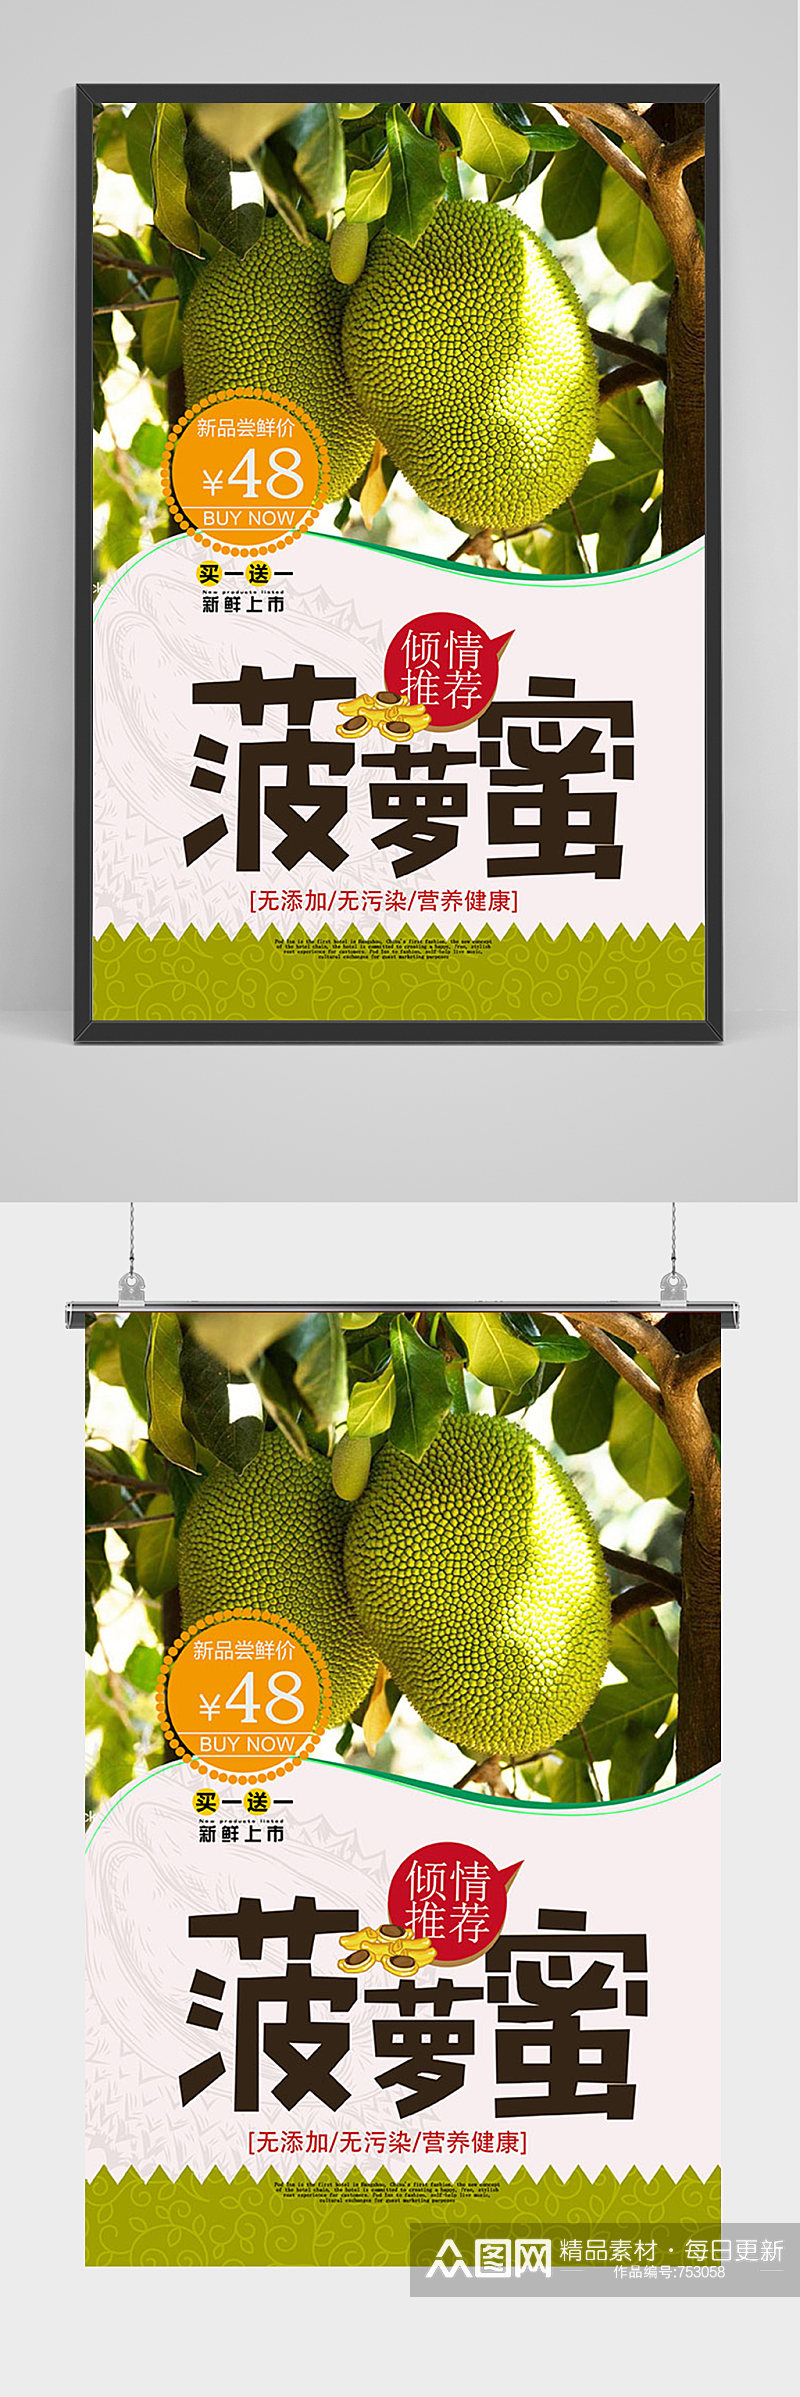 清新热带水果菠萝蜜促销宣传海报素材